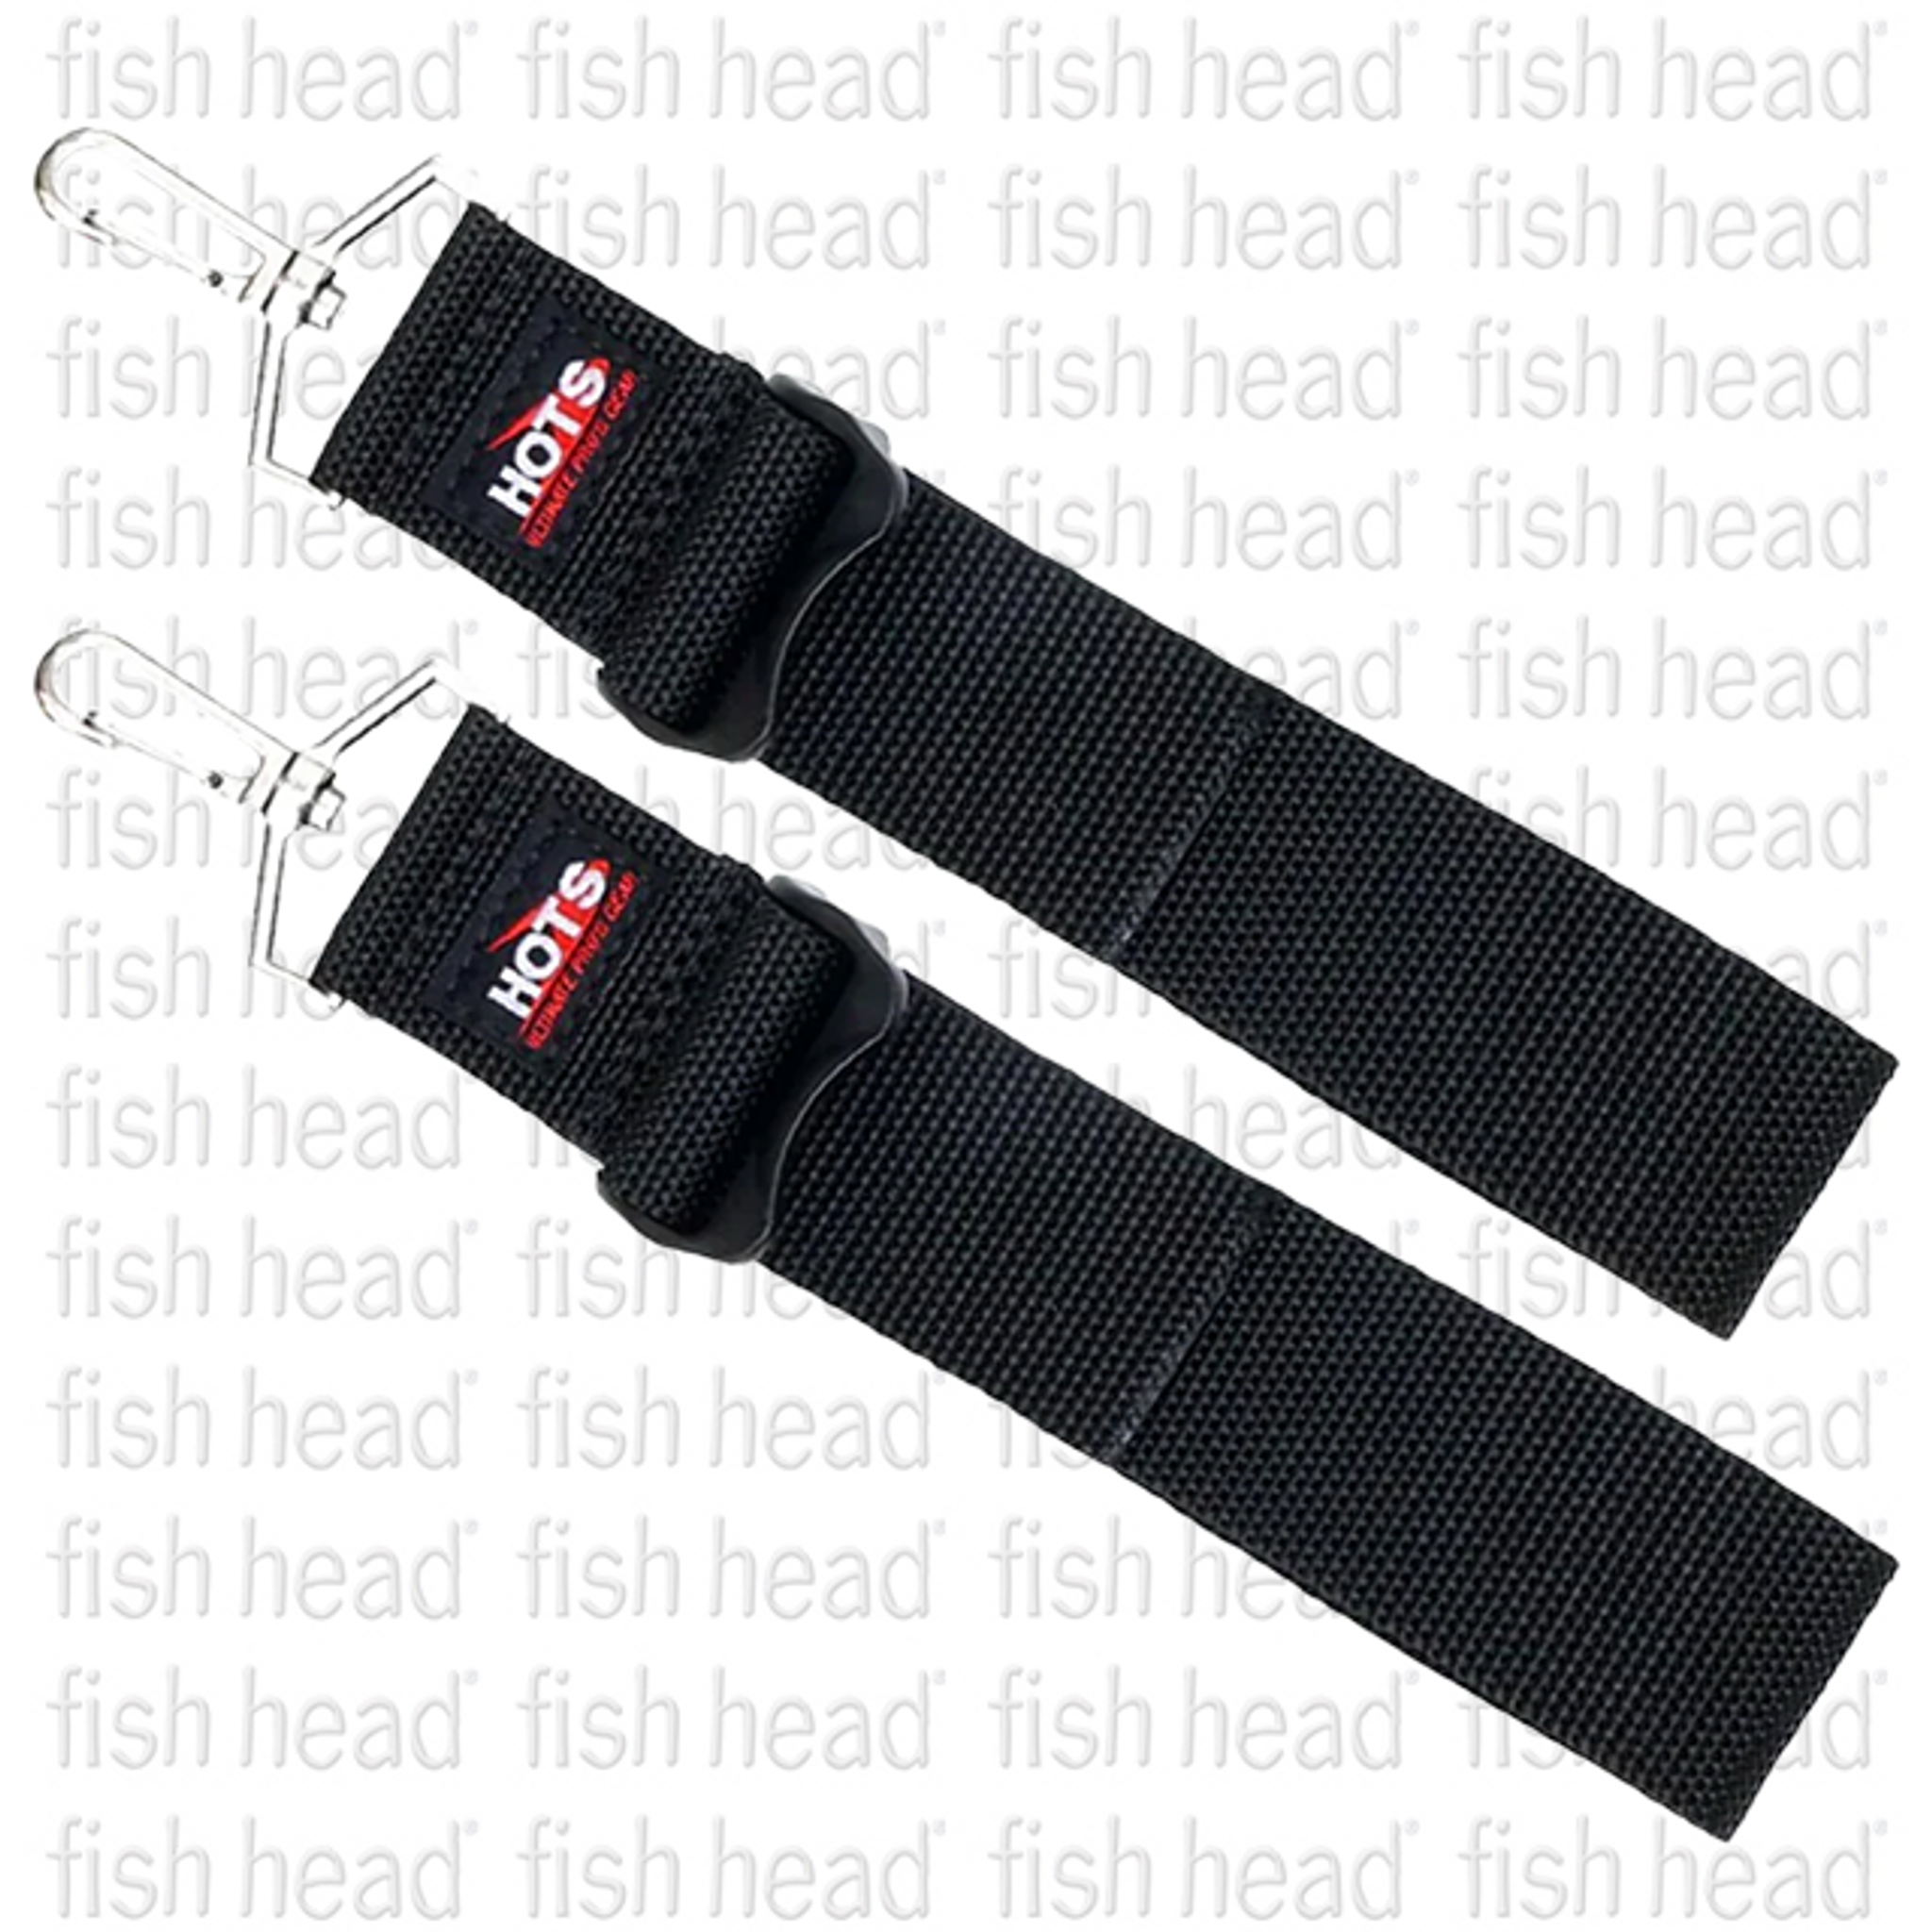 Hots Belt Drop Straps - Fish Head